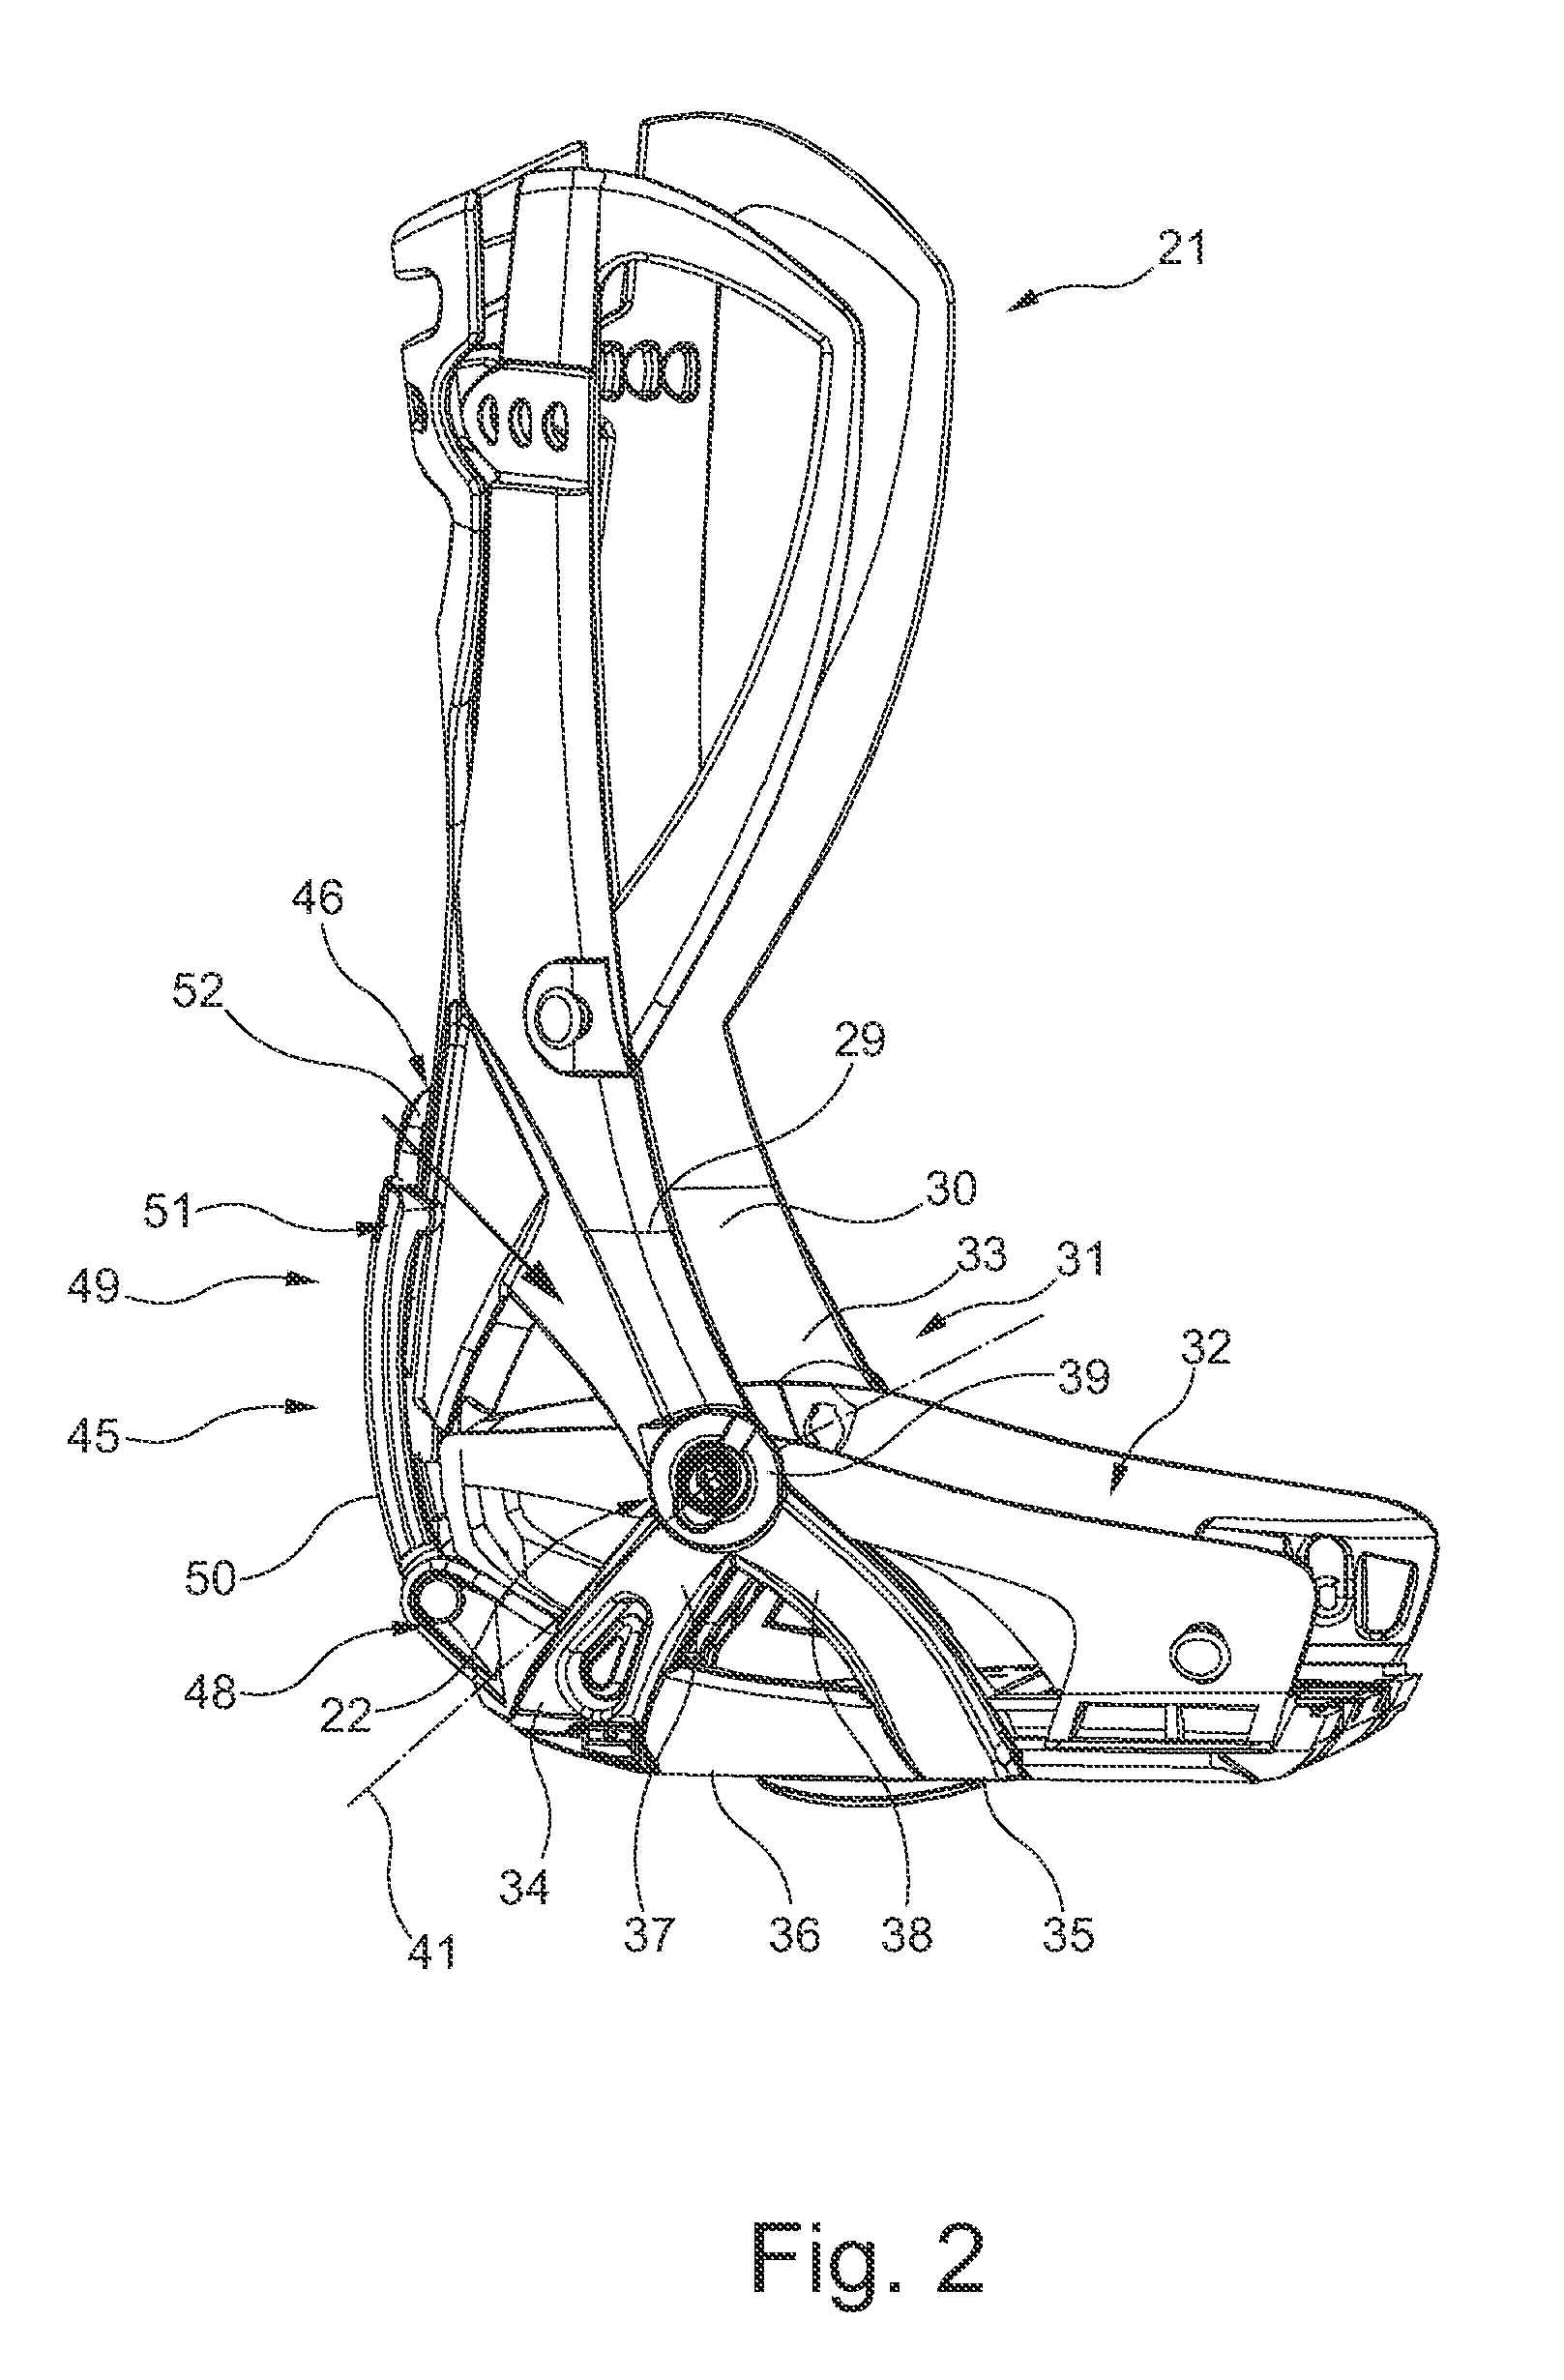 Support shell arrangement for arrangement at a lower leg